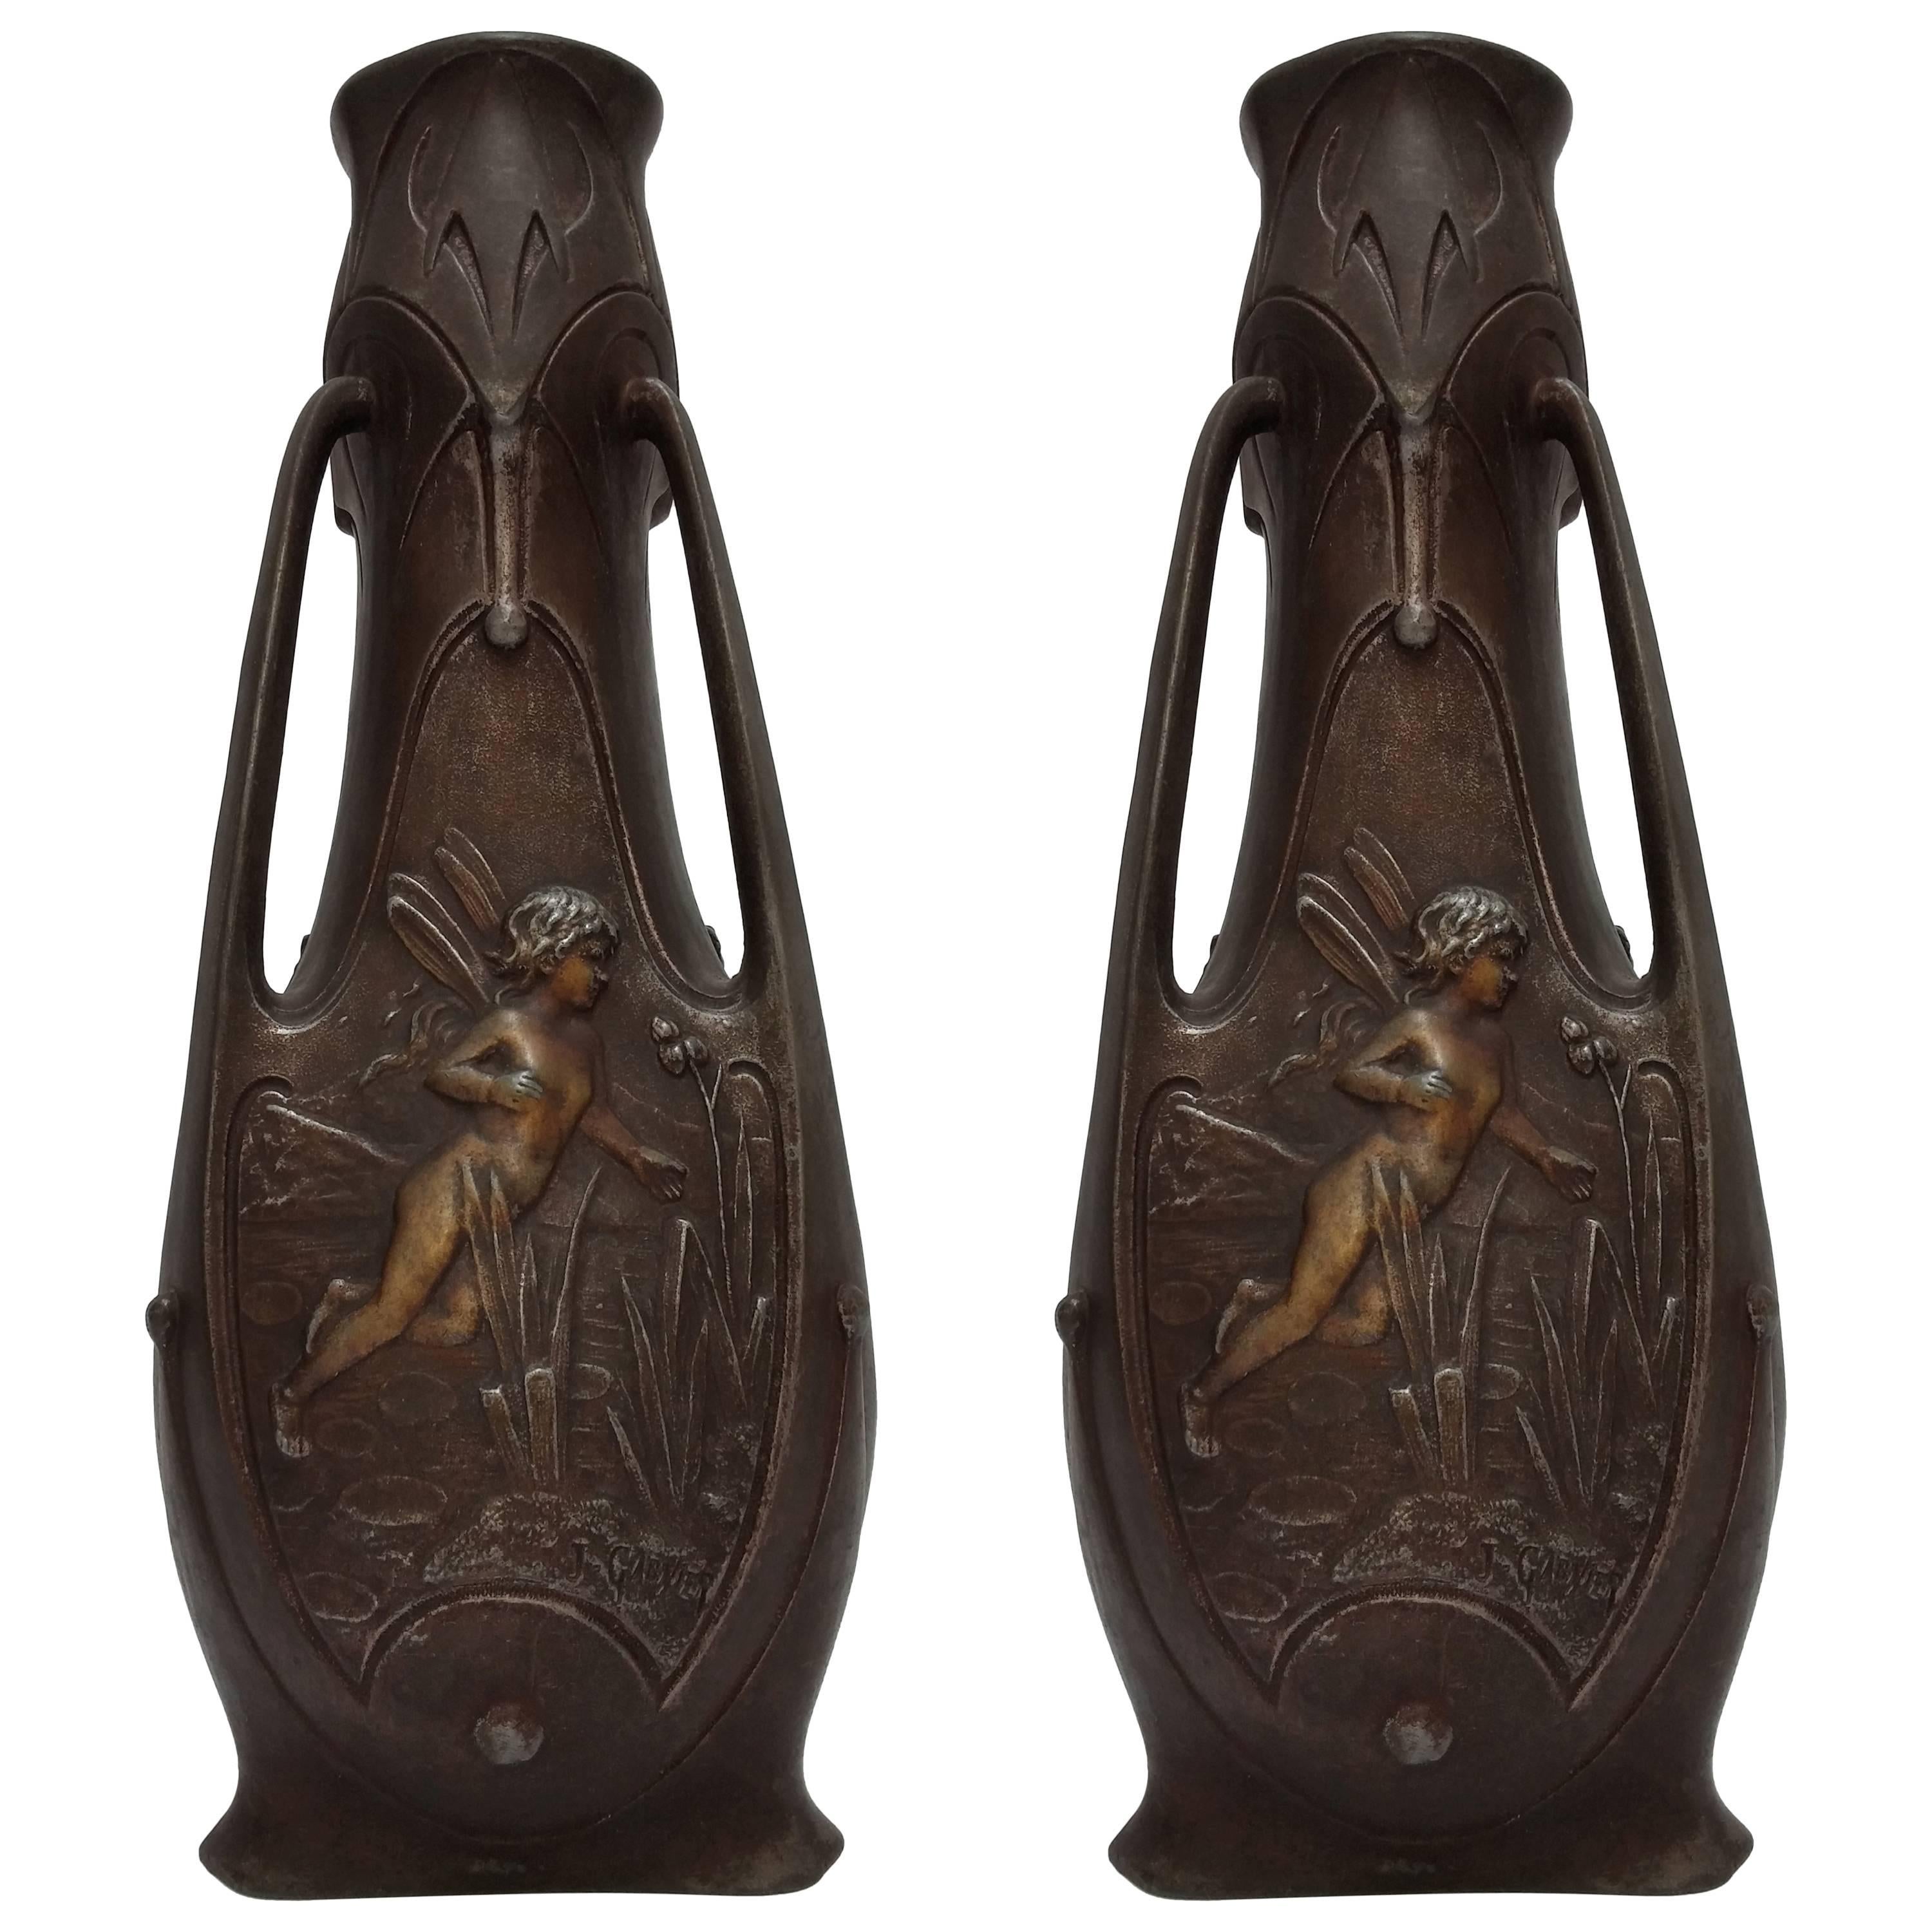 French Art Nouveau Vases